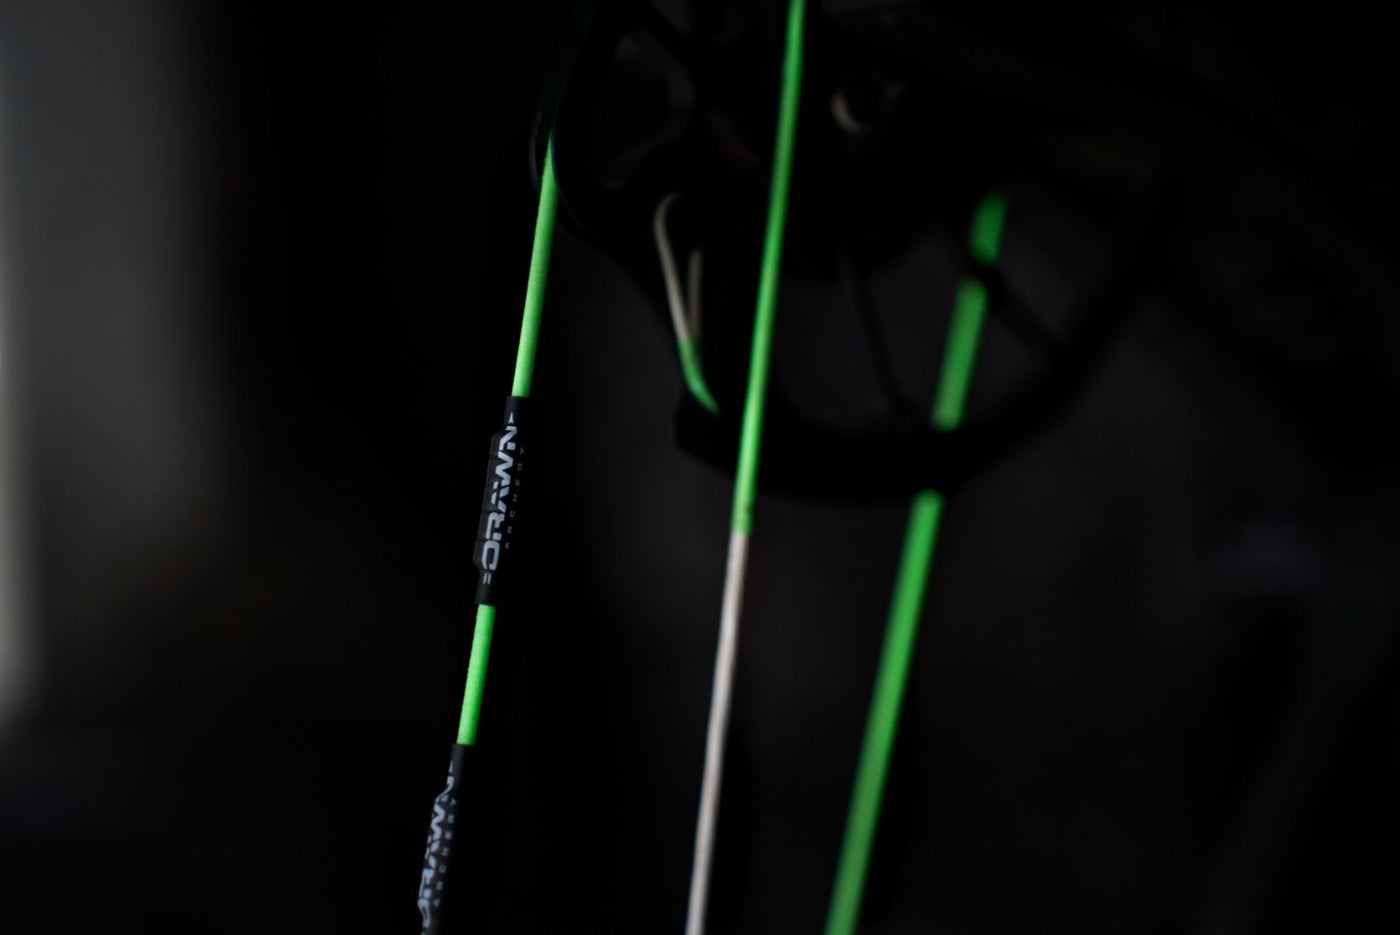 Drawn Archery BCY 452x Custom Bowstring